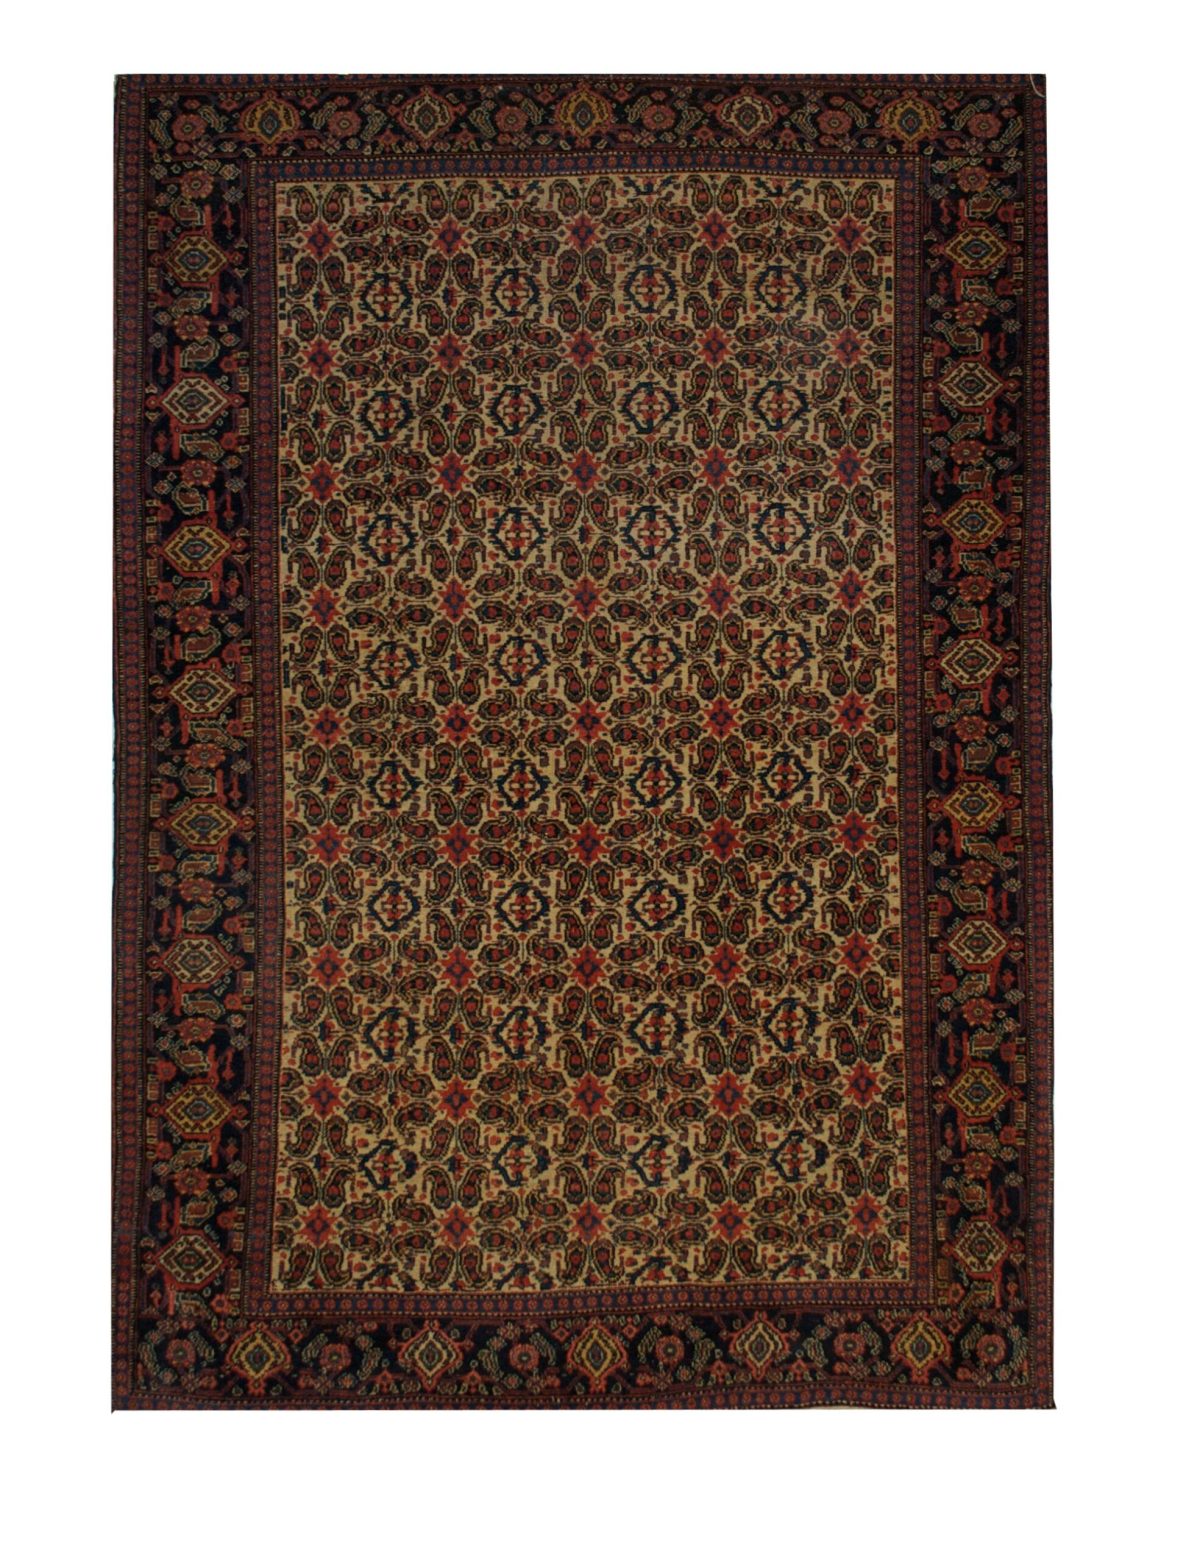 Antique Persian Seneh 5' 1" x 7' 5" - Shabahang Royal Carpet